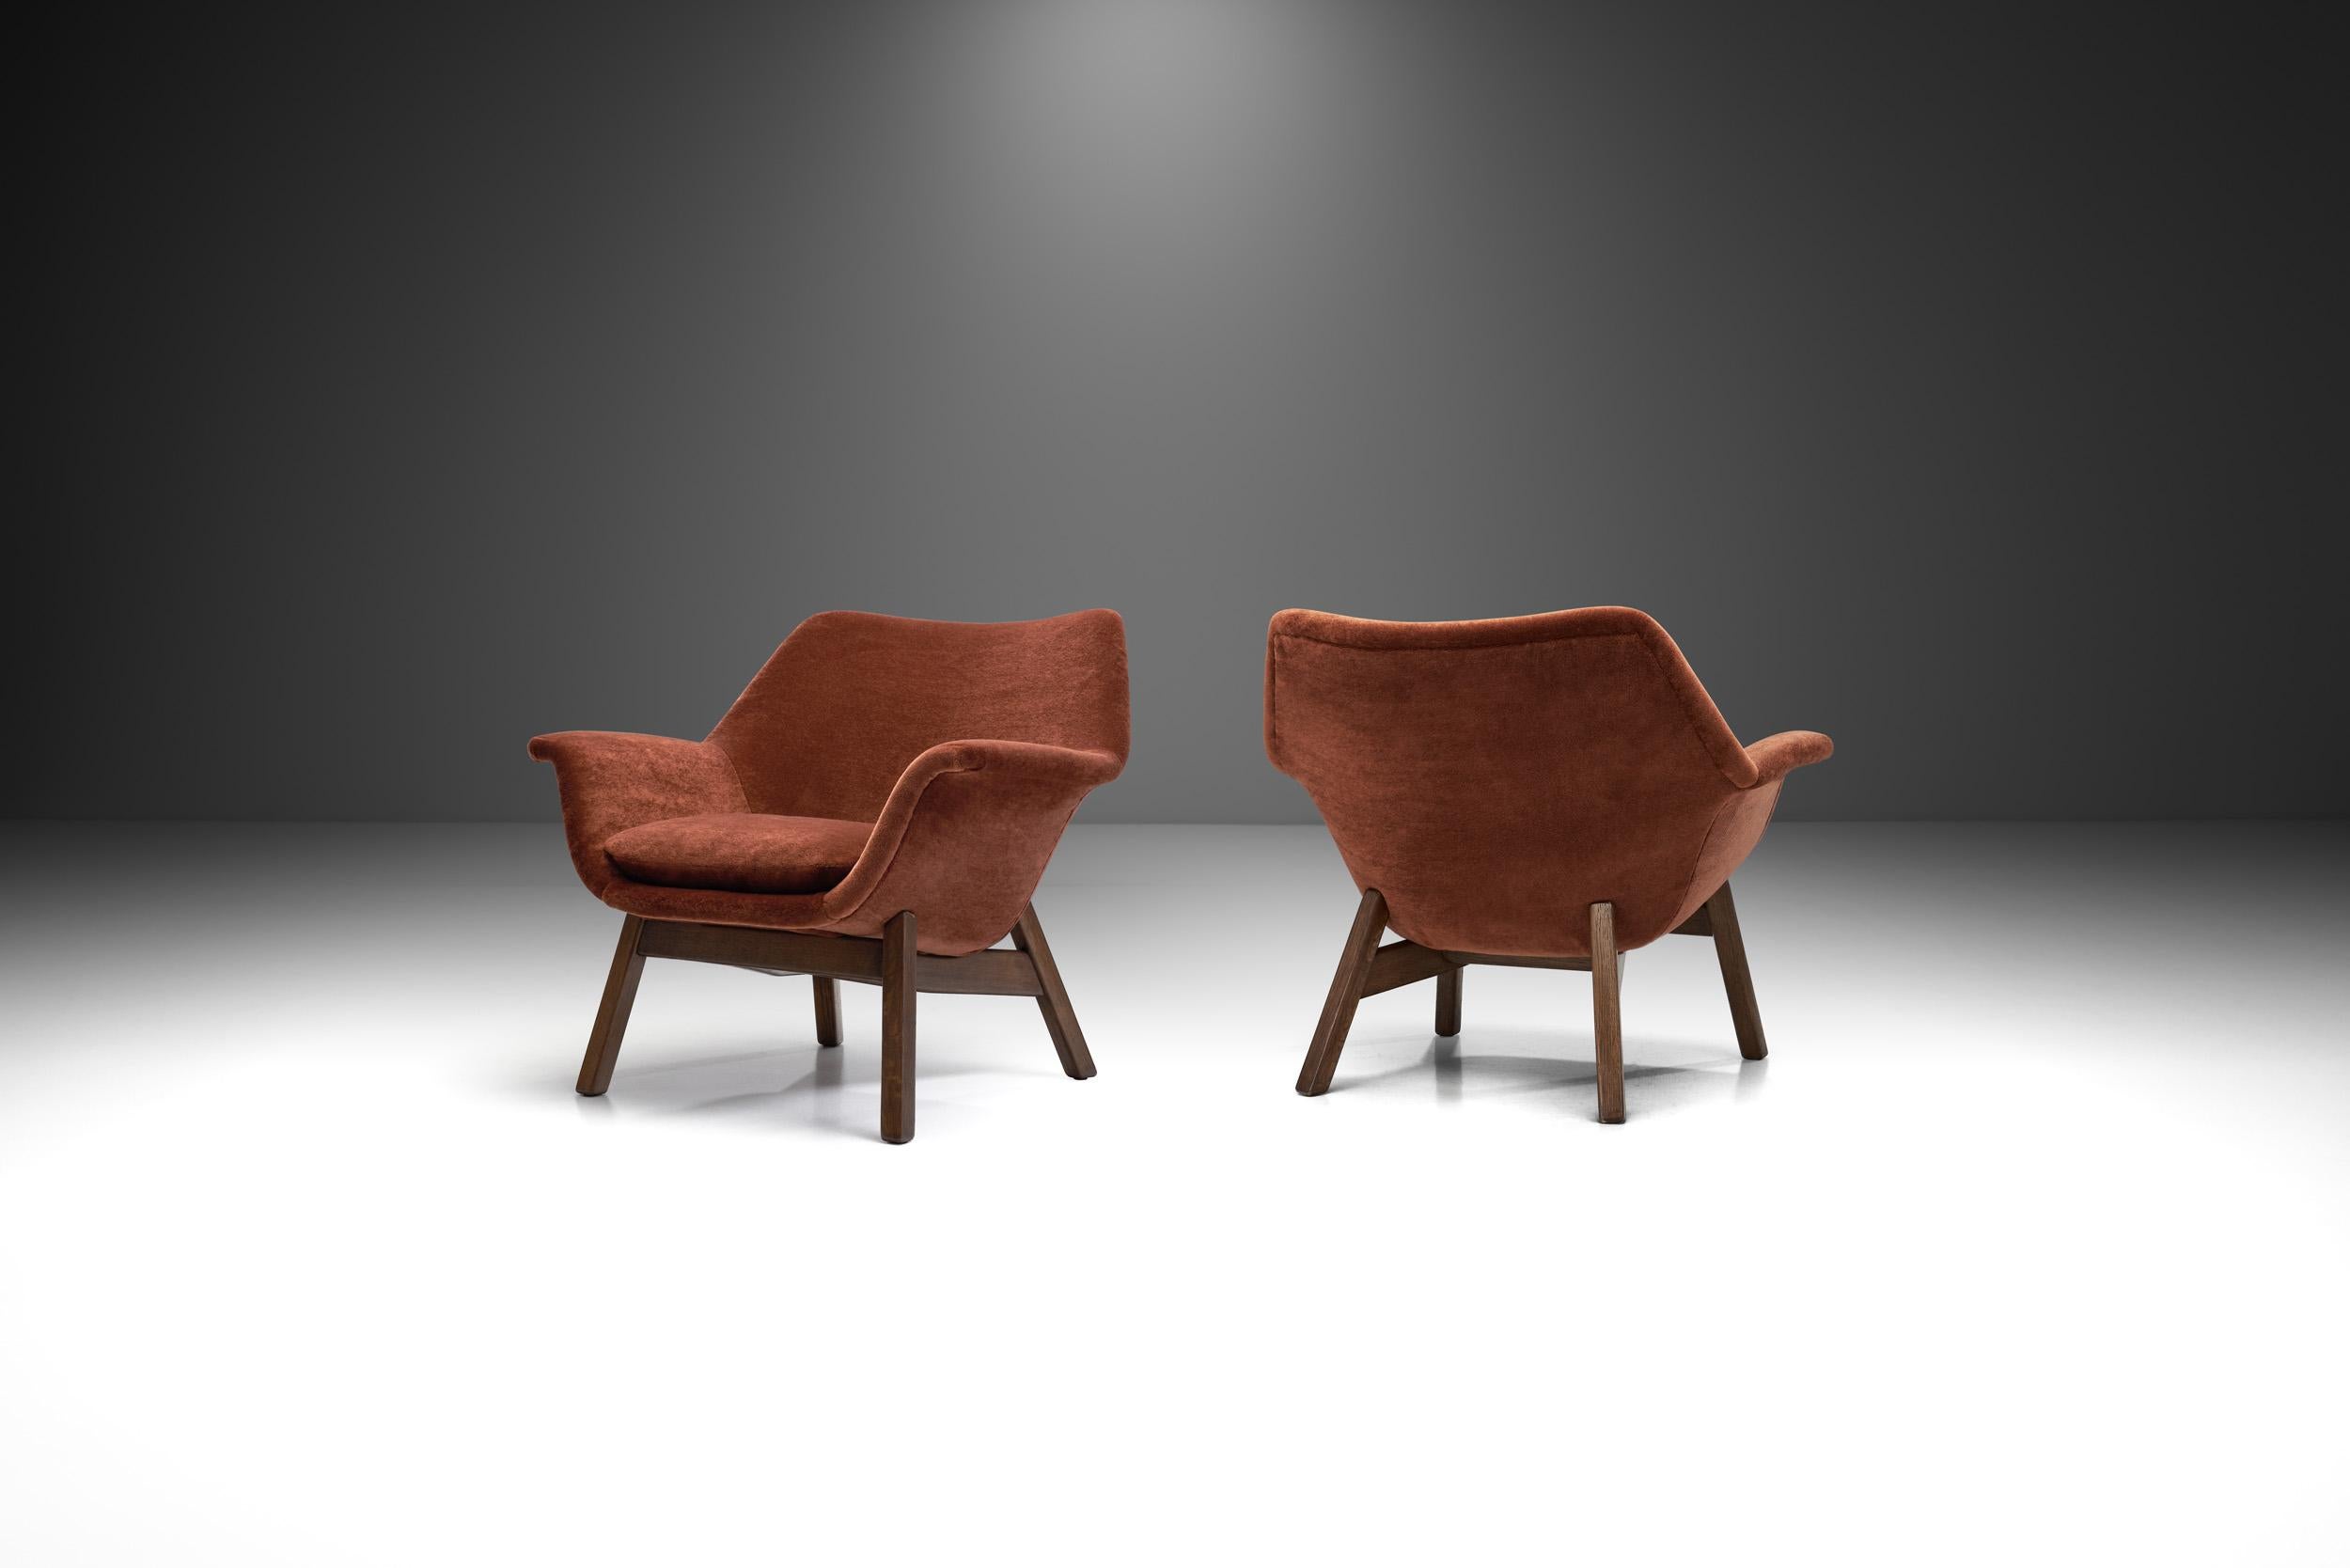 Dieses Paar seltener Sessel aus Eiche zeigt die wohnliche Rundung, die das Design der 1950er Jahre in den nordischen Ländern prägte. Hiort af Ornäs entwickelte das Modell für seine eigene Möbelfirma, 